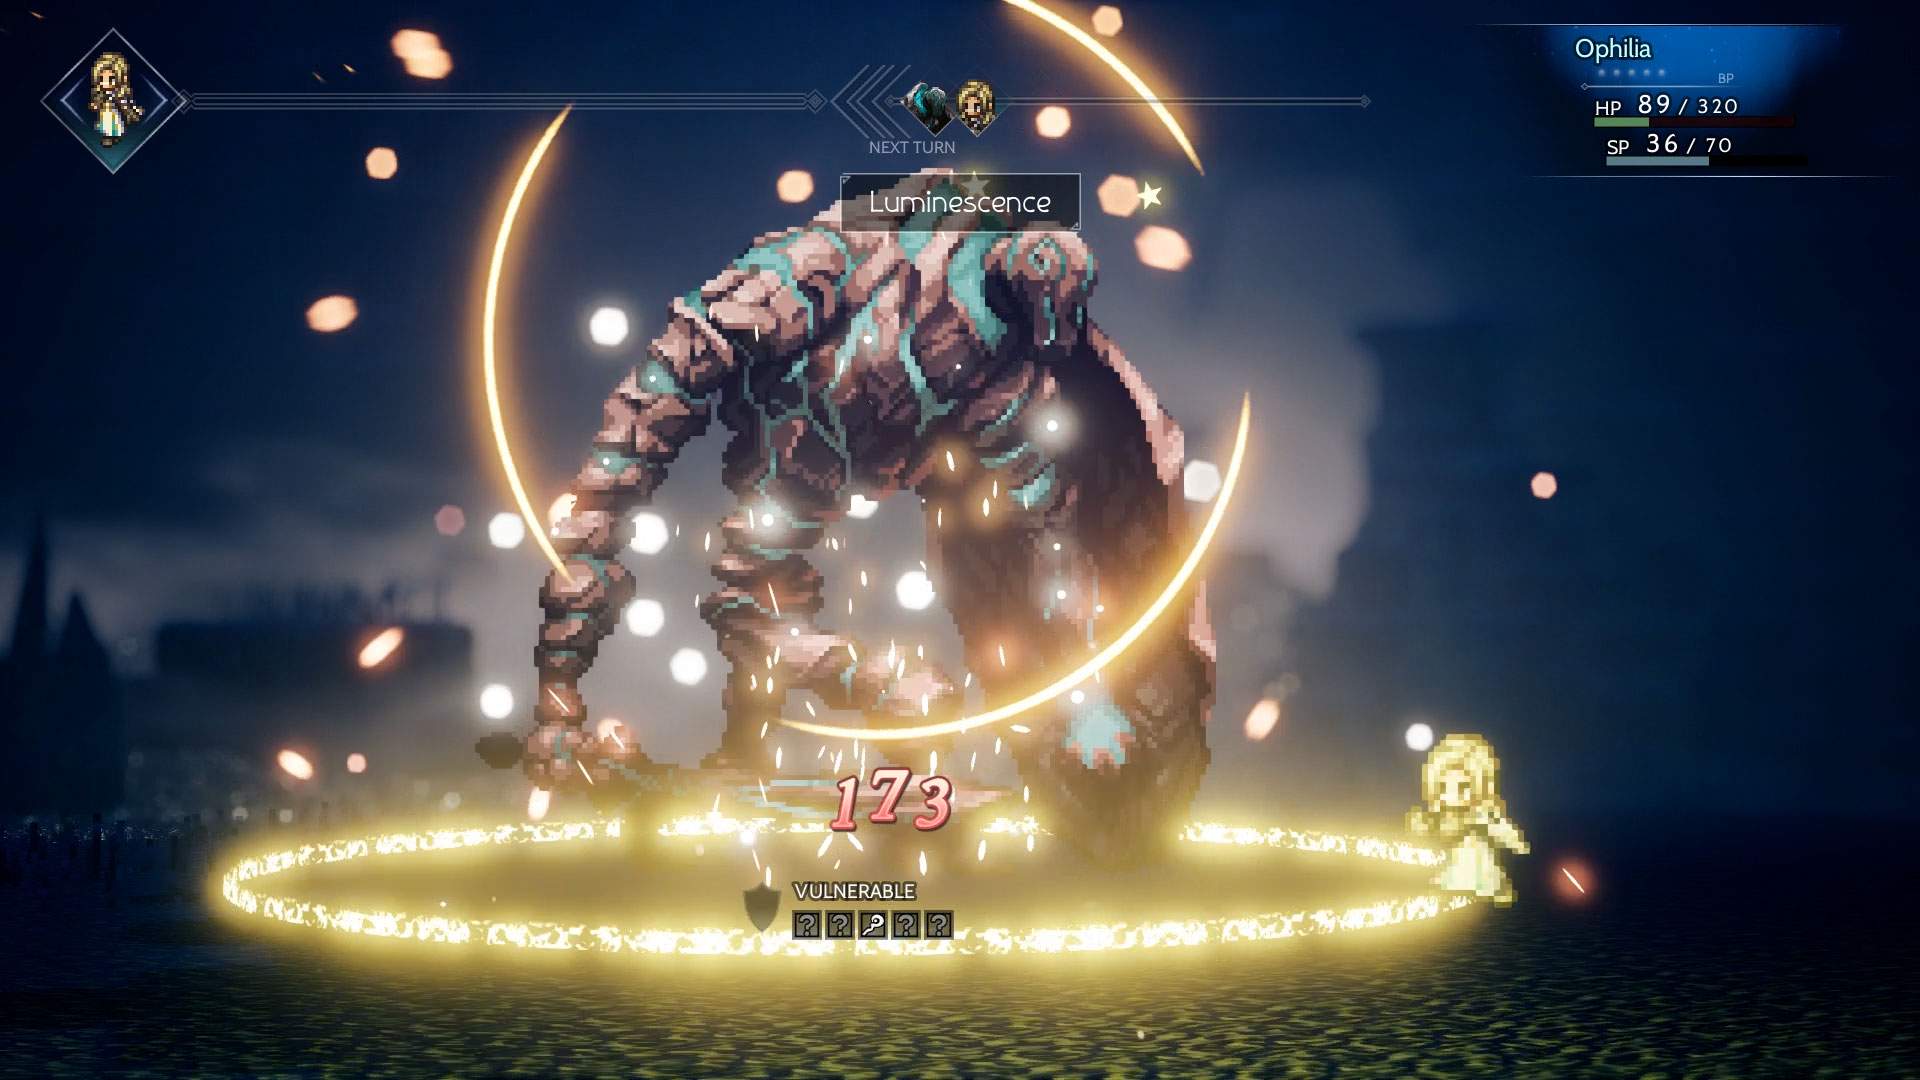 Der Screenshot zeigt Ophilia, die in einer düsteren Umgebung einen Angriff gegen ein großes Monster ausführt.